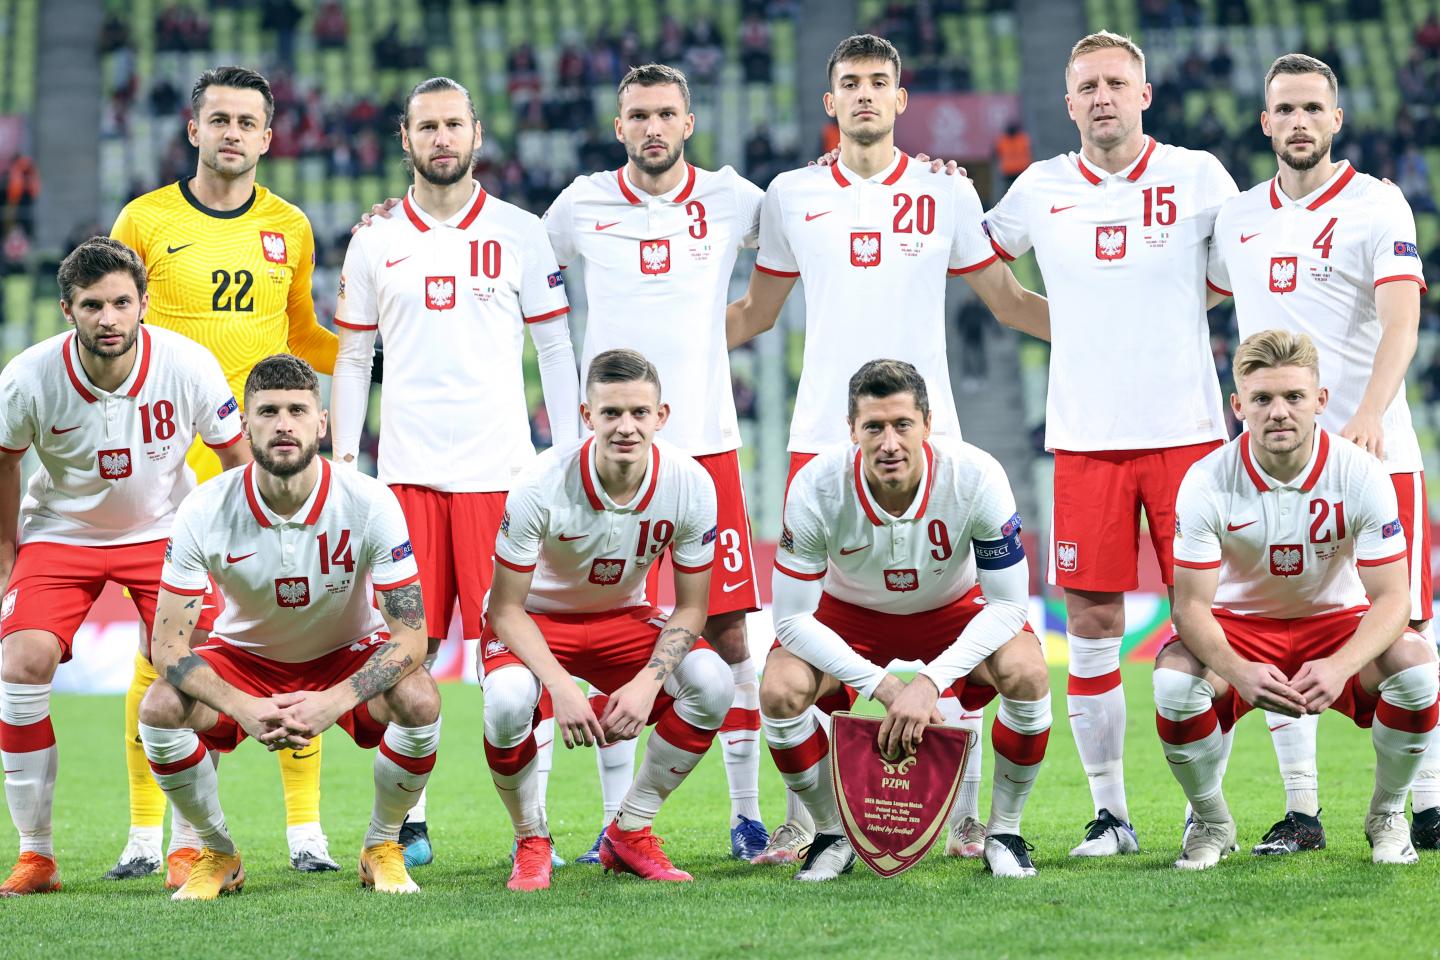 Grupowe zdjęcie reprezentacji Polski przed meczem z Włochami w Lidze Narodów 2020/2021.